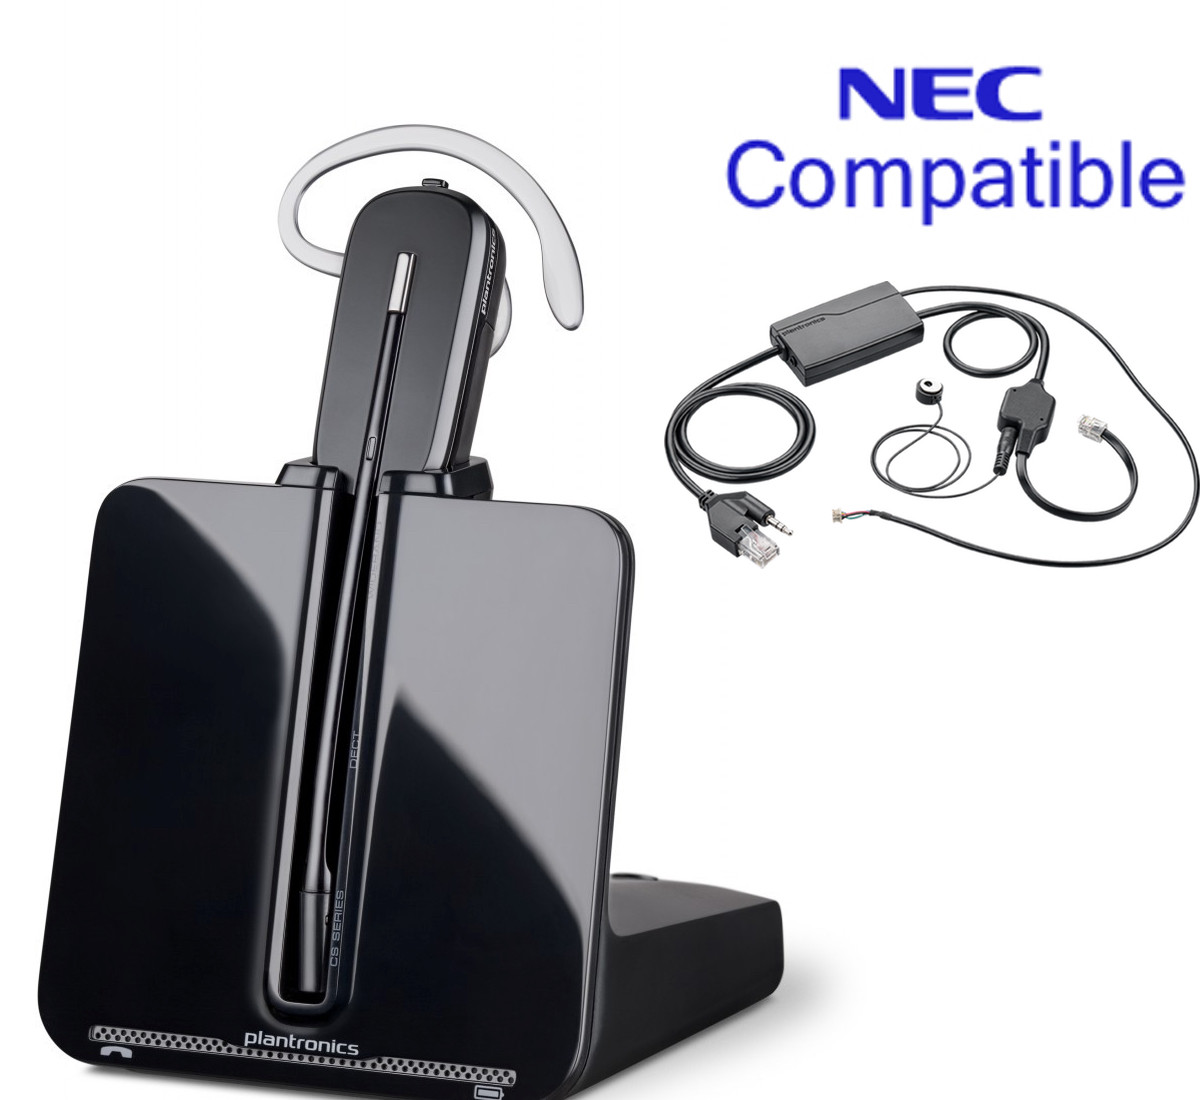 NEC Compatible Plantronics Cordless Headset Bundle -CS540 EHS with